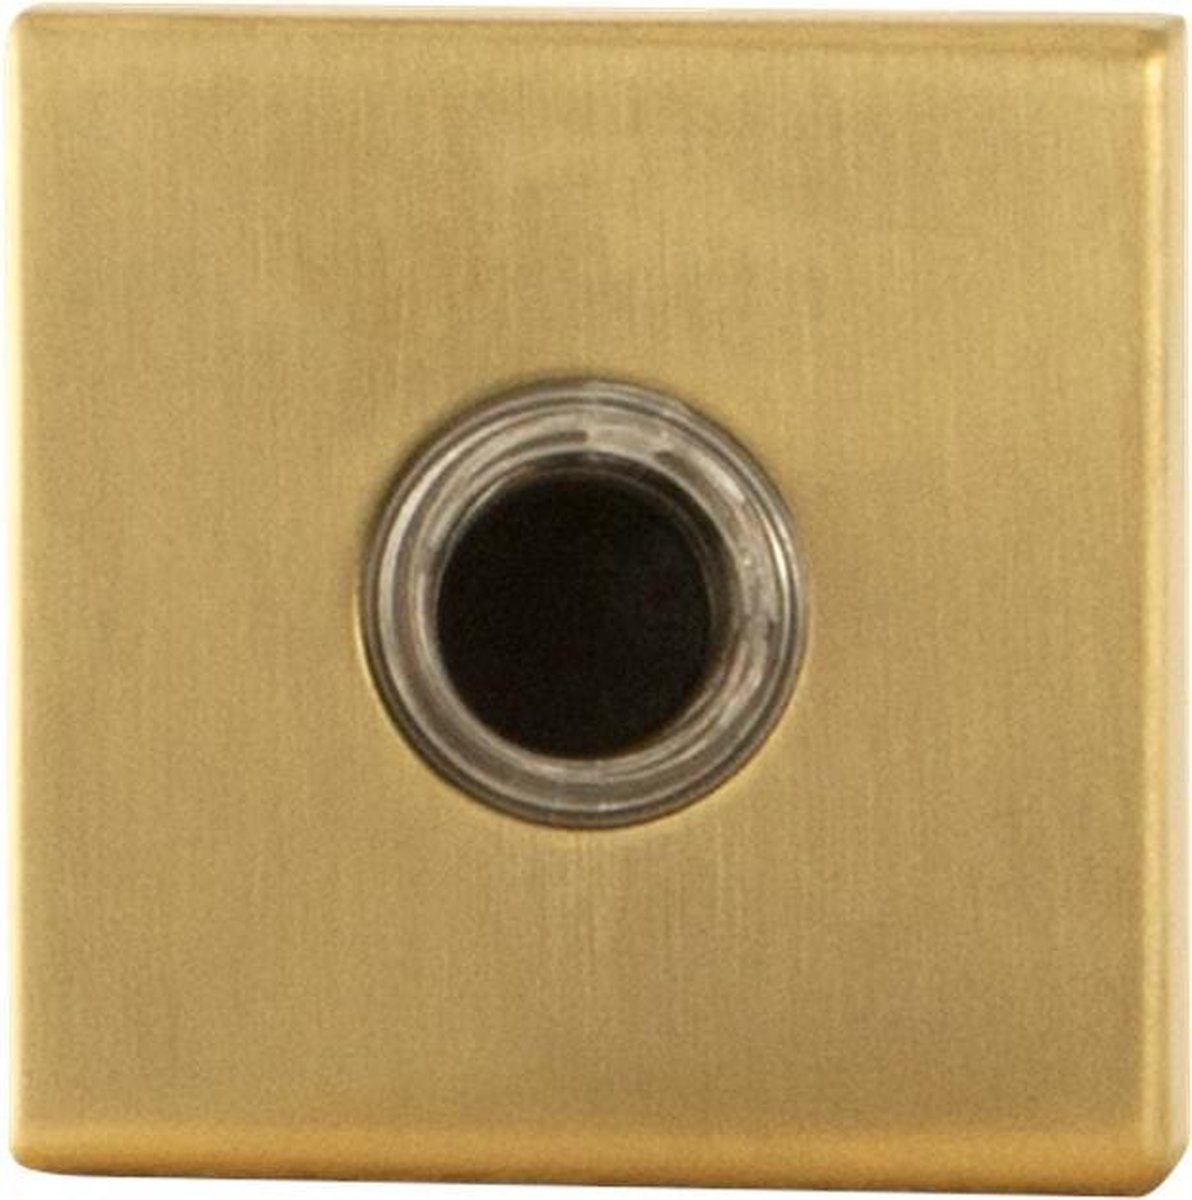 GPF9826.02P4 deurbel met zwarte button vierkant 50x50x8 mm PVD mat messing